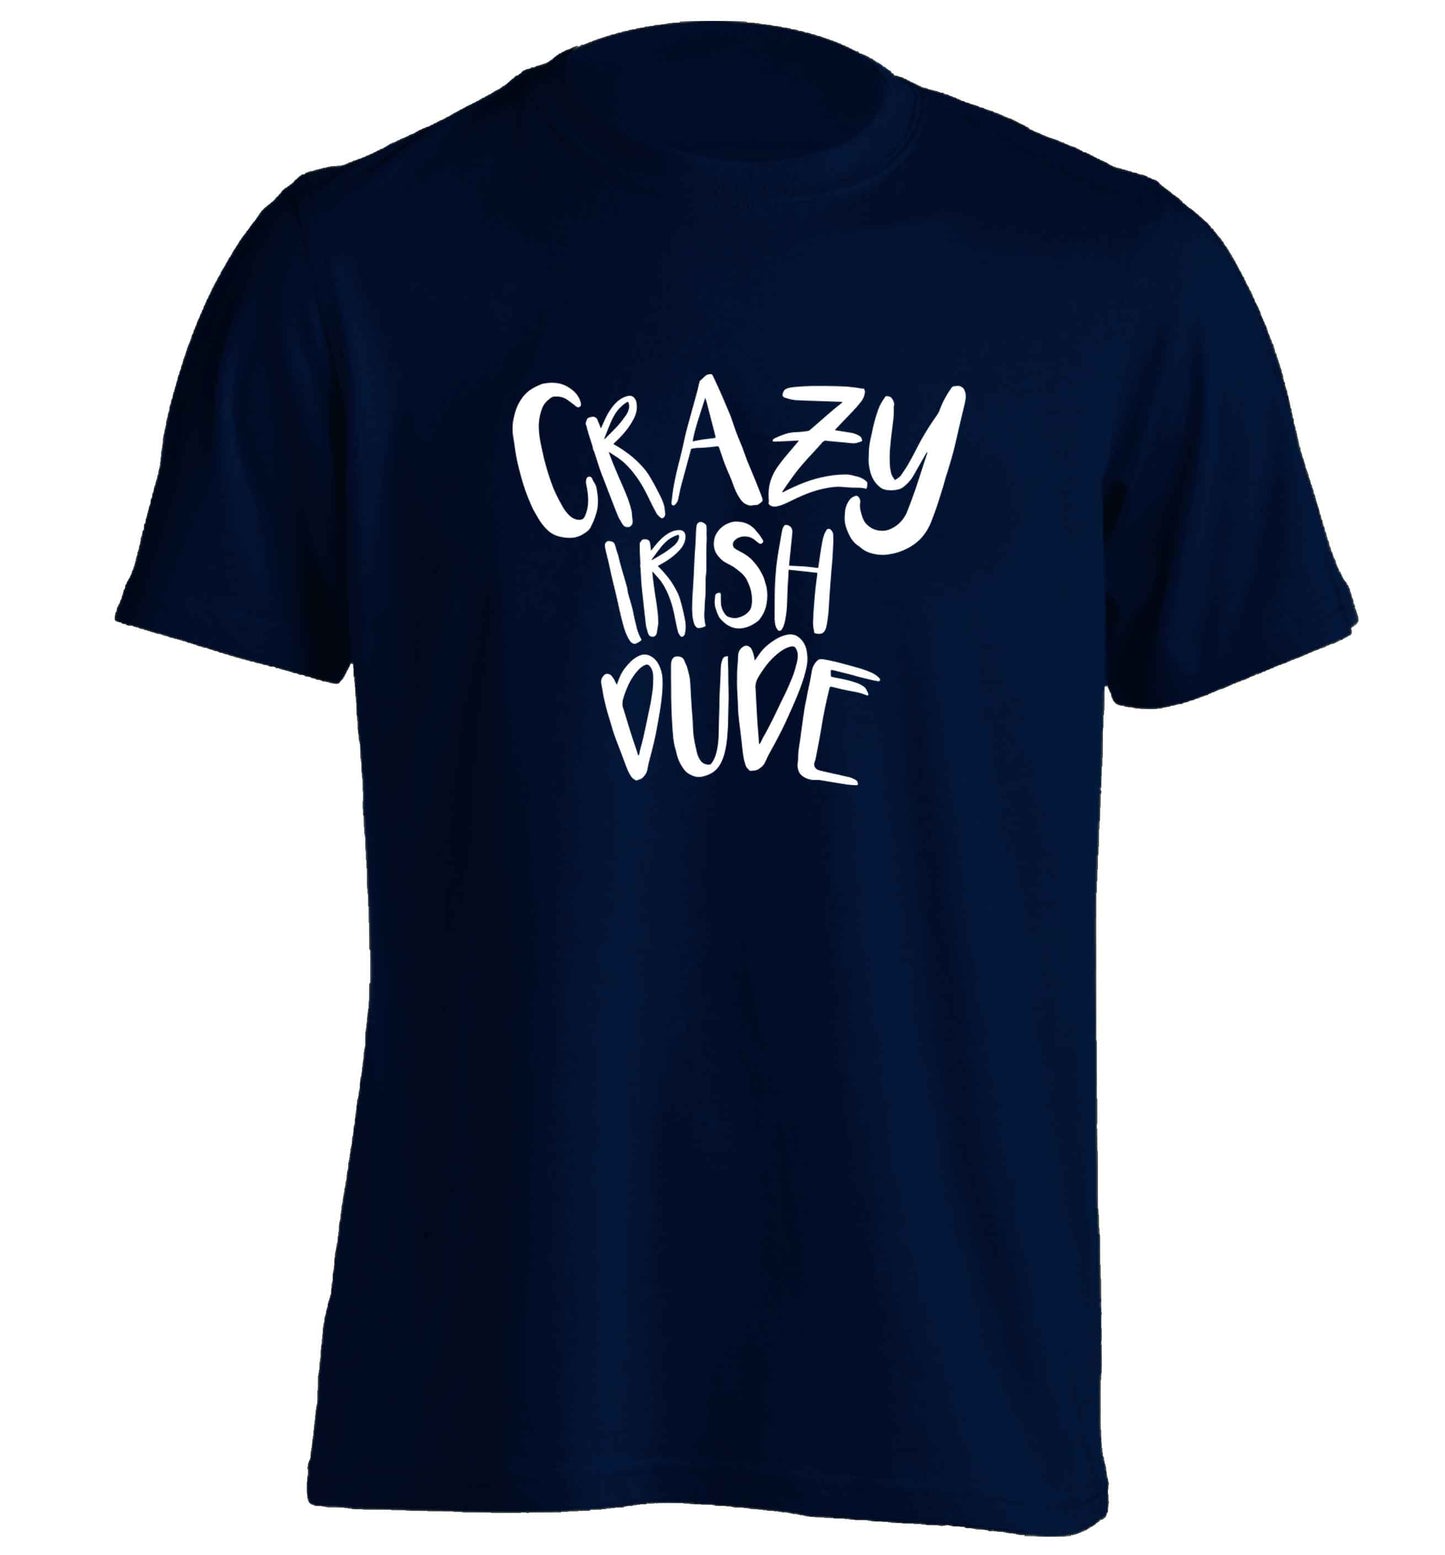 Crazy Irish dude adults unisex navy Tshirt 2XL